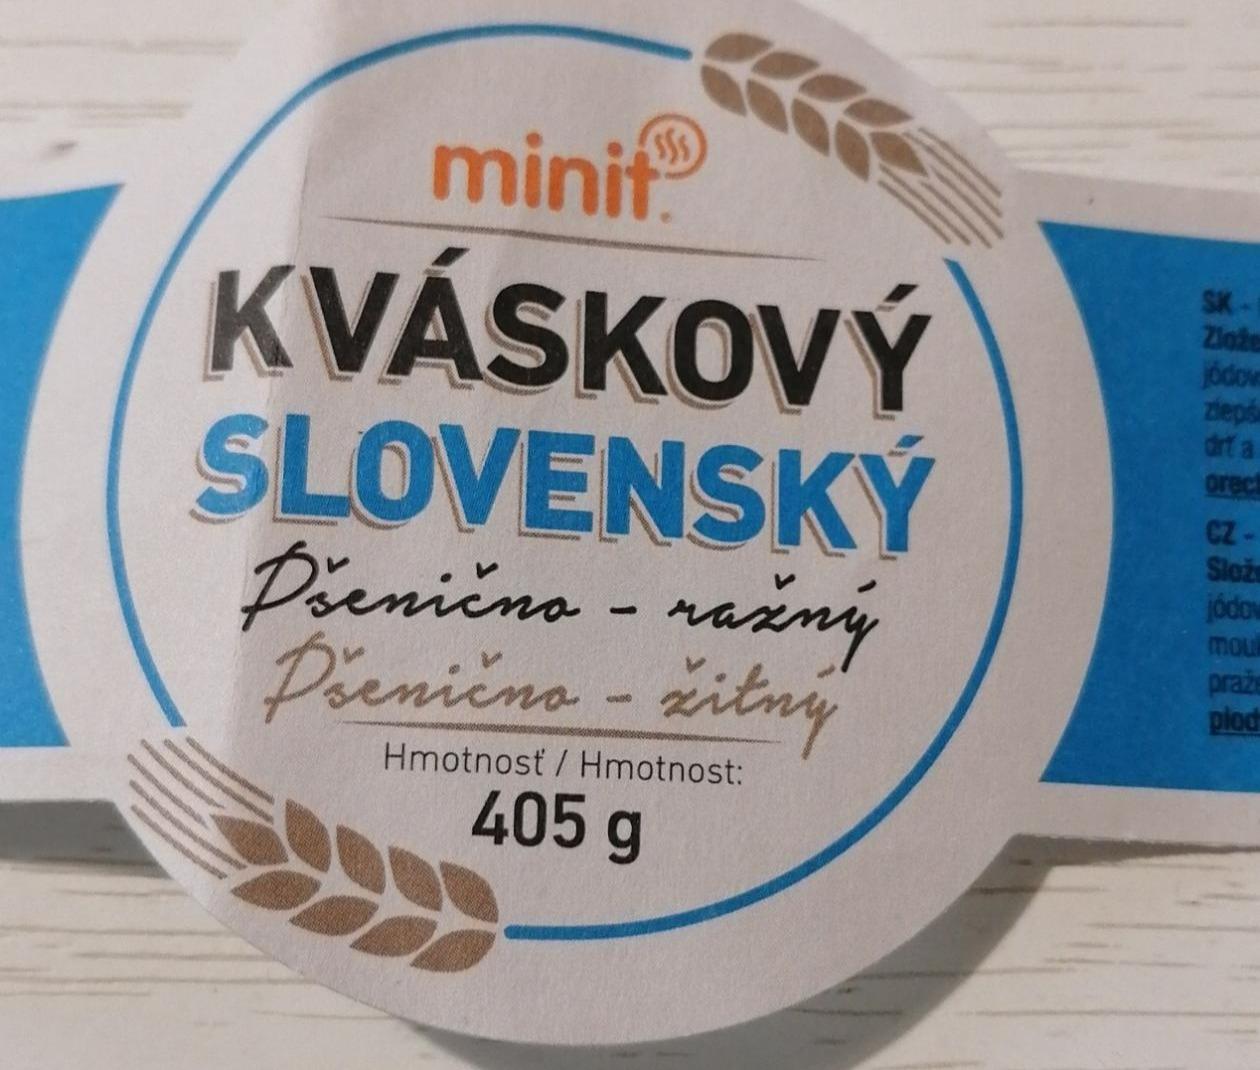 Fotografie - Kváskový slovenský pšenično-žitný chléb Minit